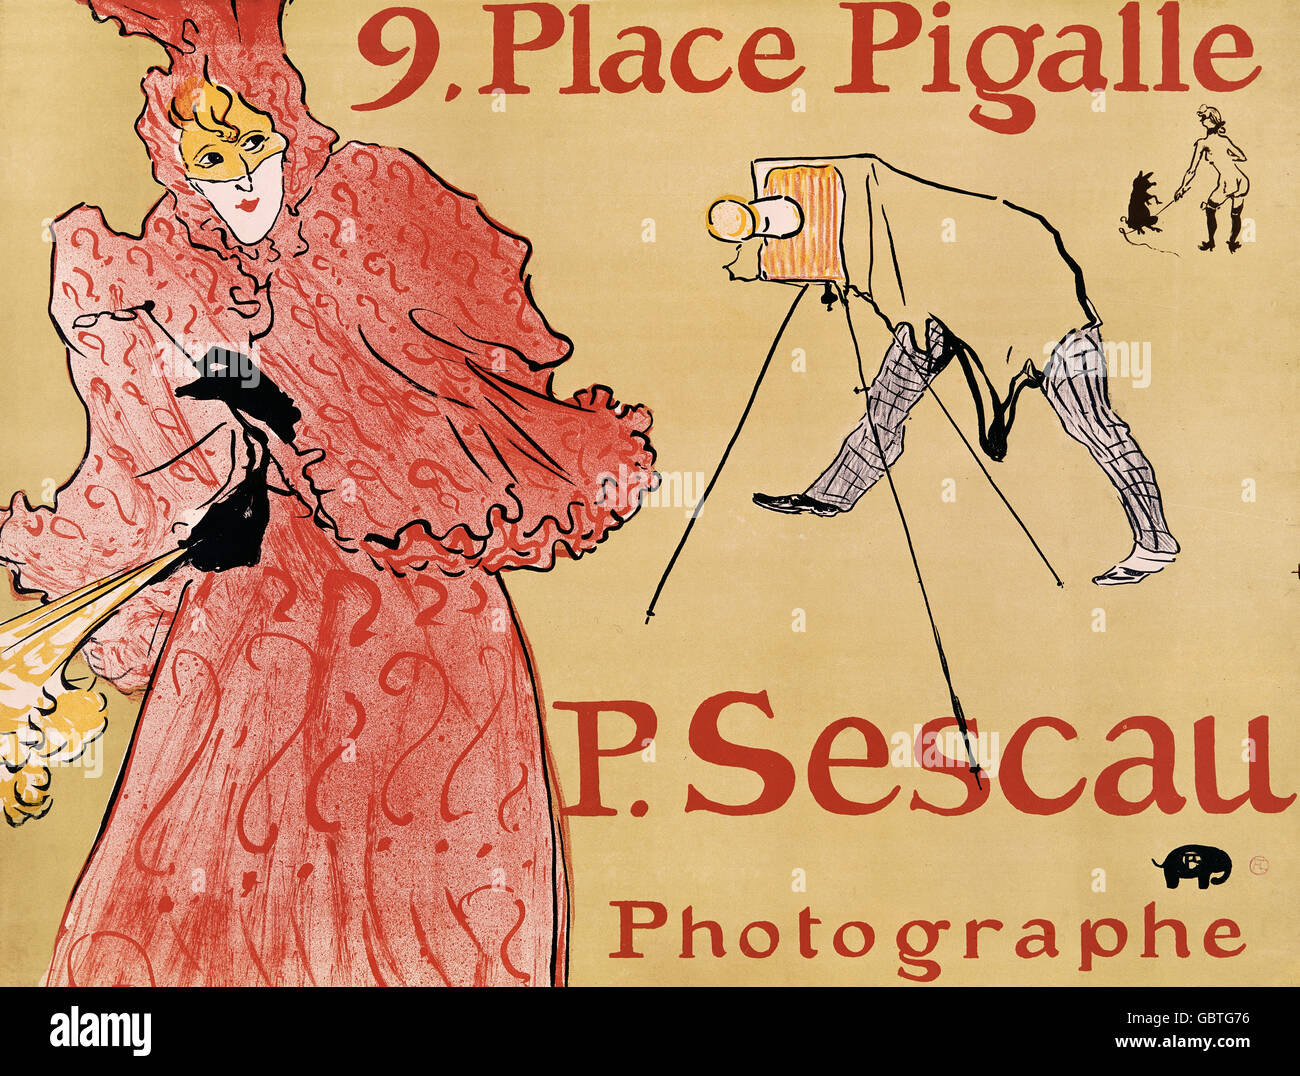 P.Sescau photographe, publicité par Henri de Toulouse-Lautrec, 19e siècle Banque D'Images